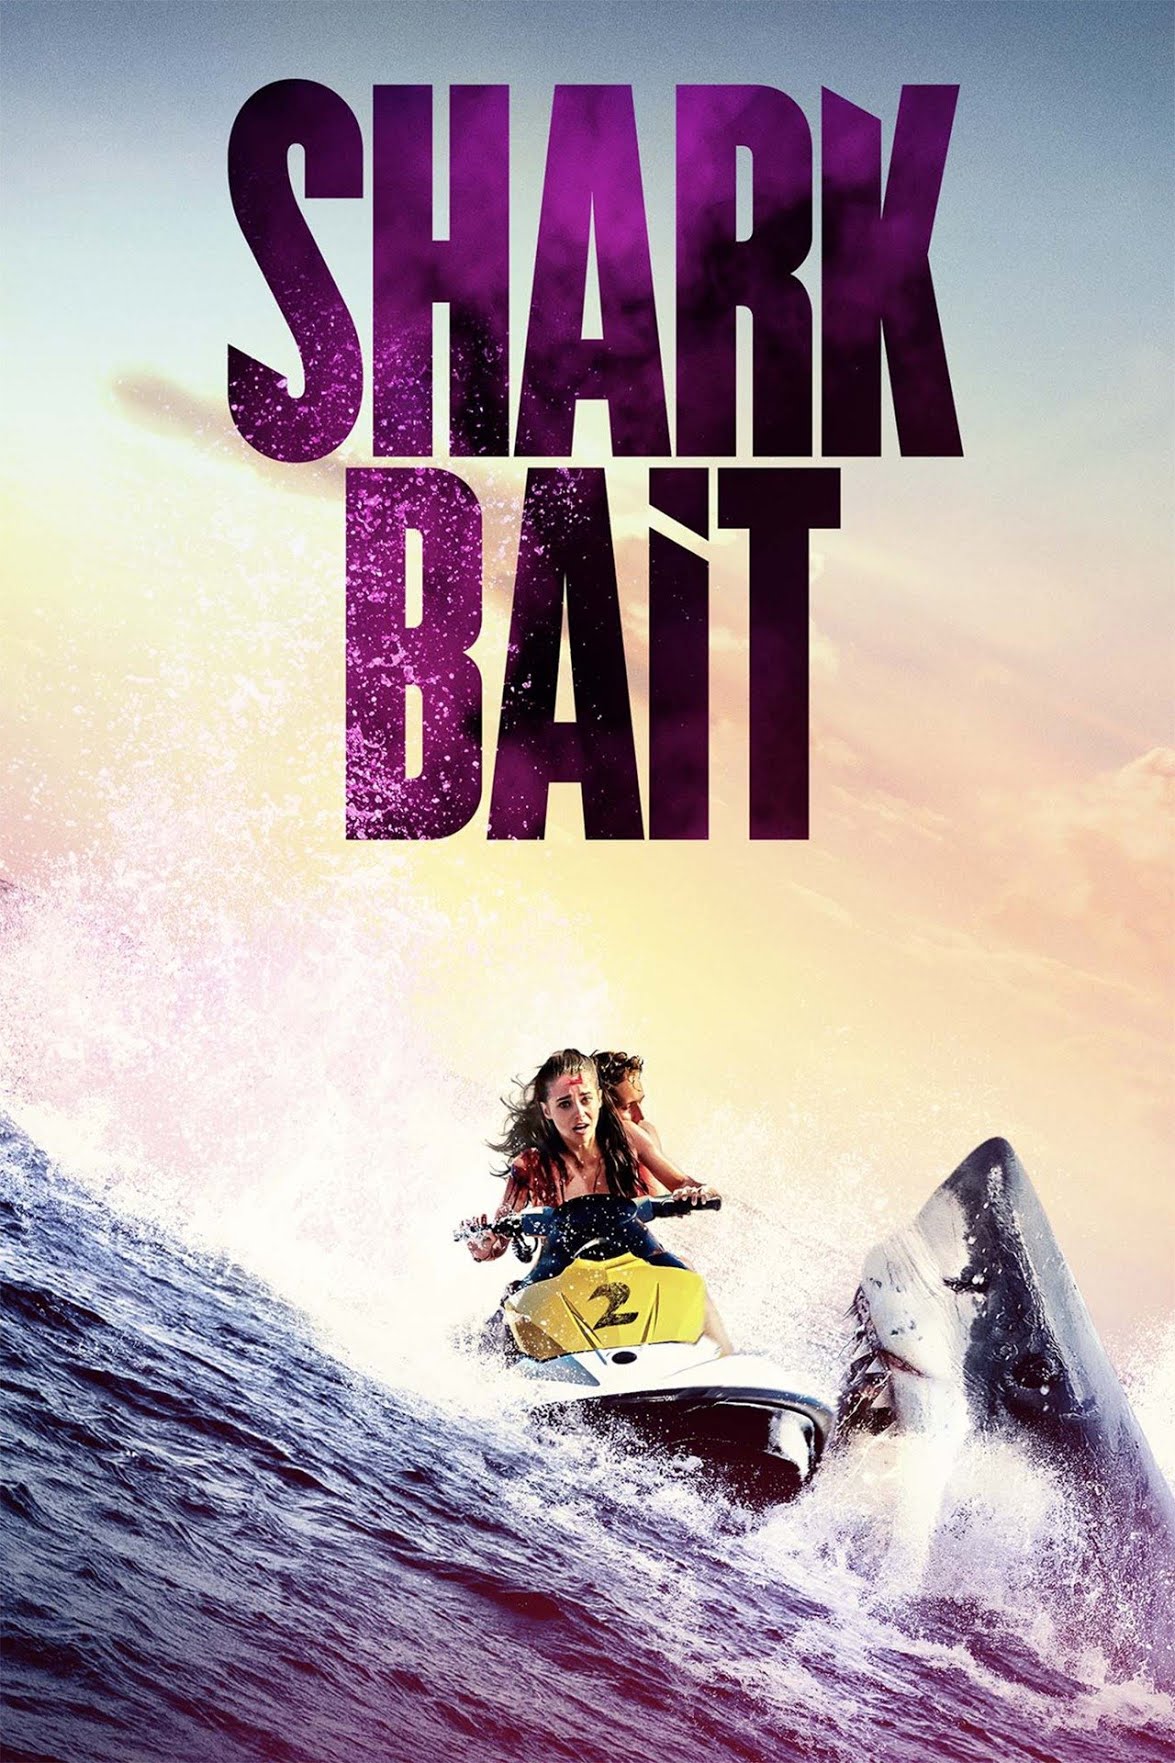 [ฝรั่ง] Shark Bait (2022) ฉลามคลั่ง ซัมเมอร์นรก [1080p] [พากย์ไทยโรง 5.1 + เสียงอังกฤษ 5.1] [บรรยายไทย + อังกฤษ] [เสียงไทยโรง + ซับไทย] [USERLOAD]